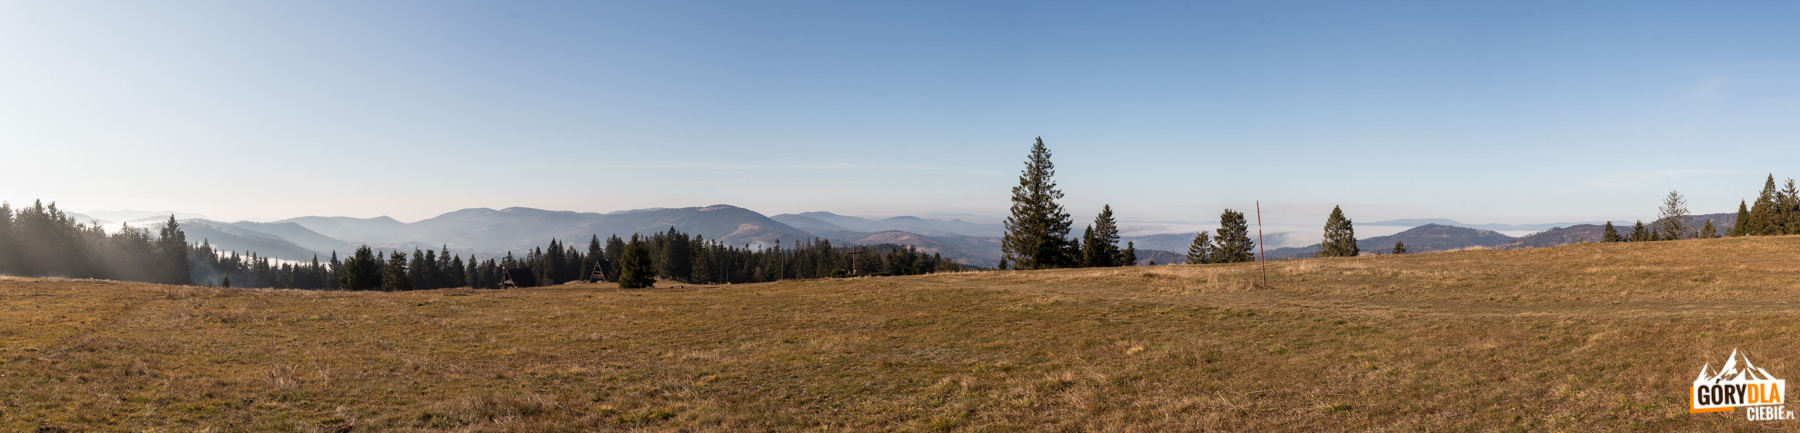 Panorama z górnej części Hali Krawcula: od lewej Oszust (1155 m), Mała Fatra, Świtkowa (1082 m), Rycerzowa Wielka (1226 m) i Rycerzowa Mała (1207 m), Wielka Racza (1236 m), Muńcuł (1165 m), Praszywka Wielka (1043 m), Magura (1073 m), Oźna (952 m), Rochowiec (954 m) i Sucha Góra (1040 m), Sucha Góra (1040), Redykalny Wierch (1144 m), na horyzoncie grań Beskidu Śląskiego od Baraniej Góry (1220 m) po Skrzyczne (1257 m), a na hali szałas, Bacówka PTTK i krzyż